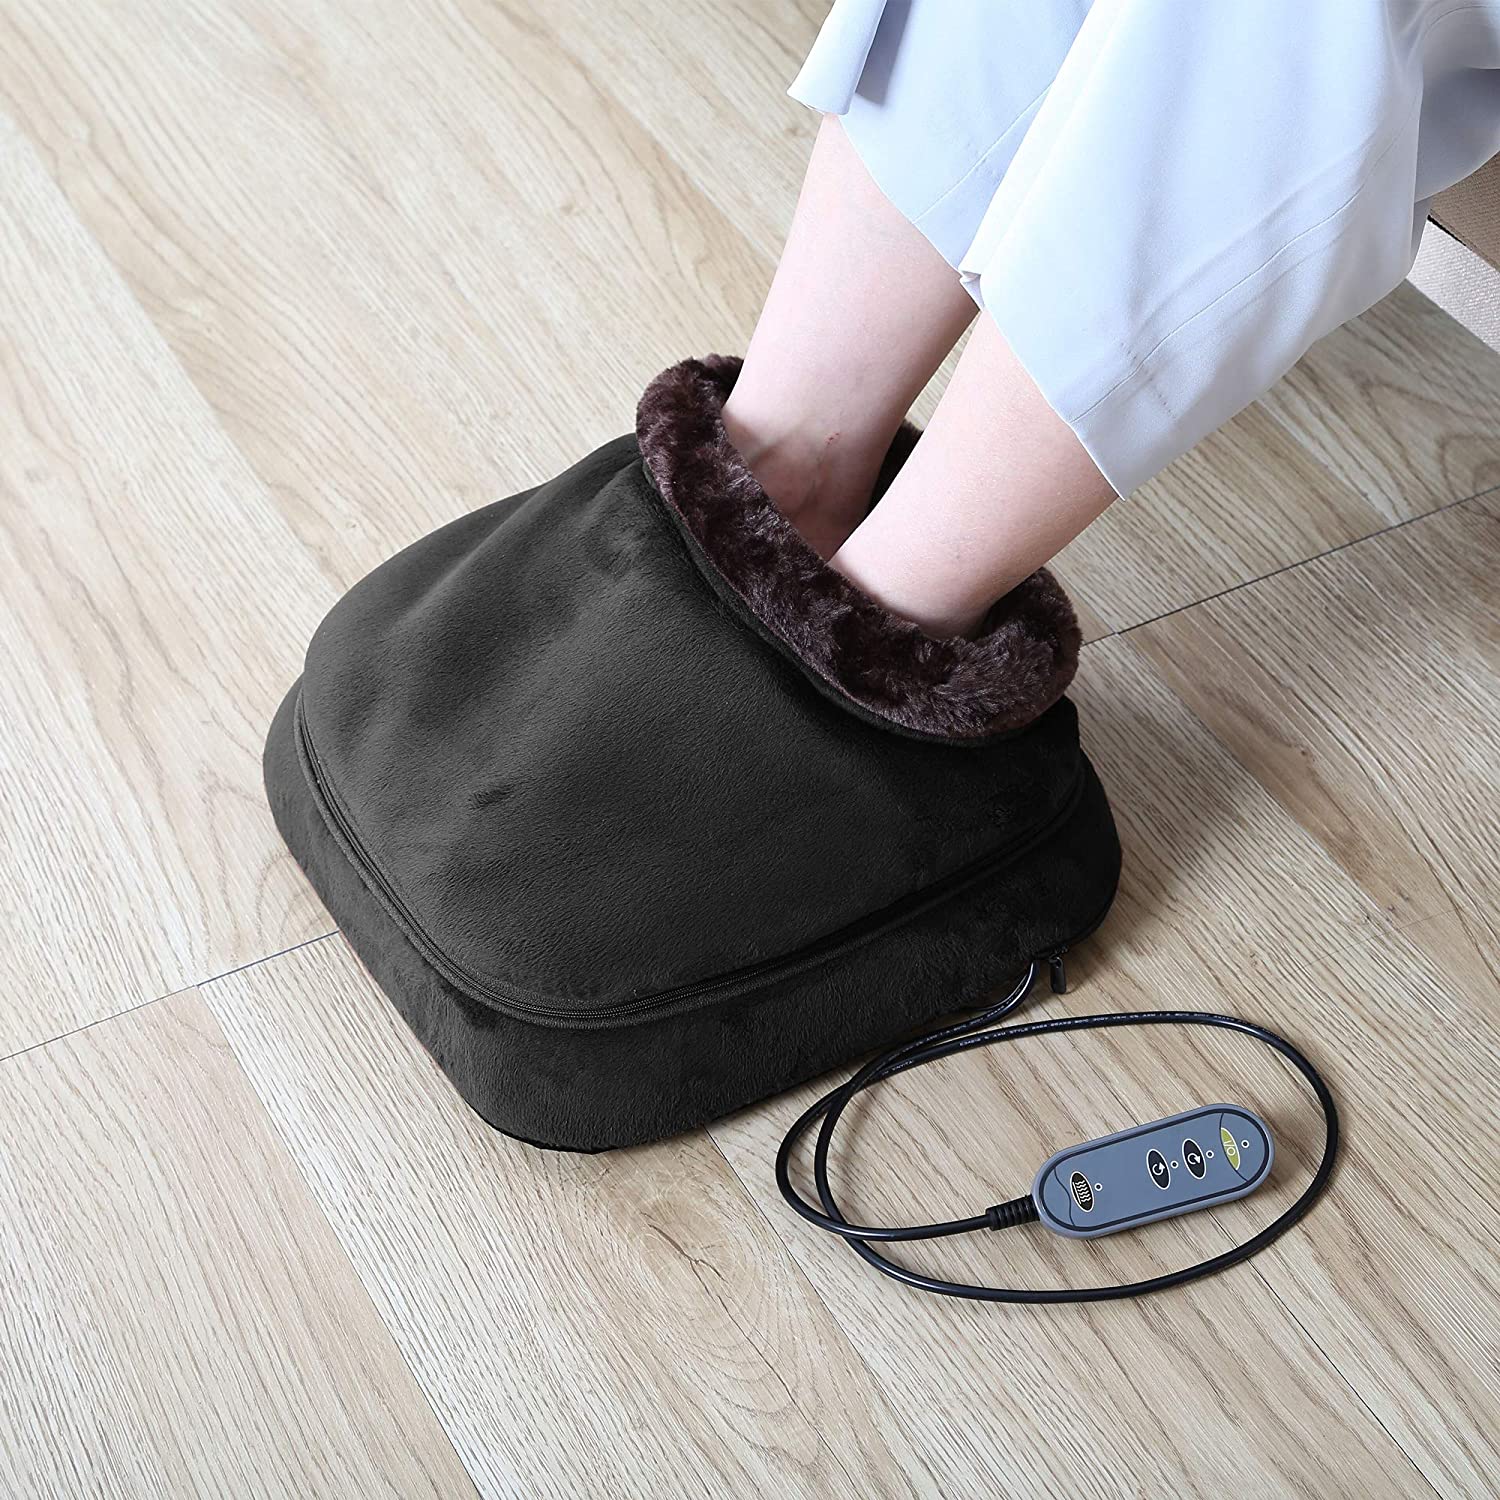 Heated massaging slippers with shiatsu massage